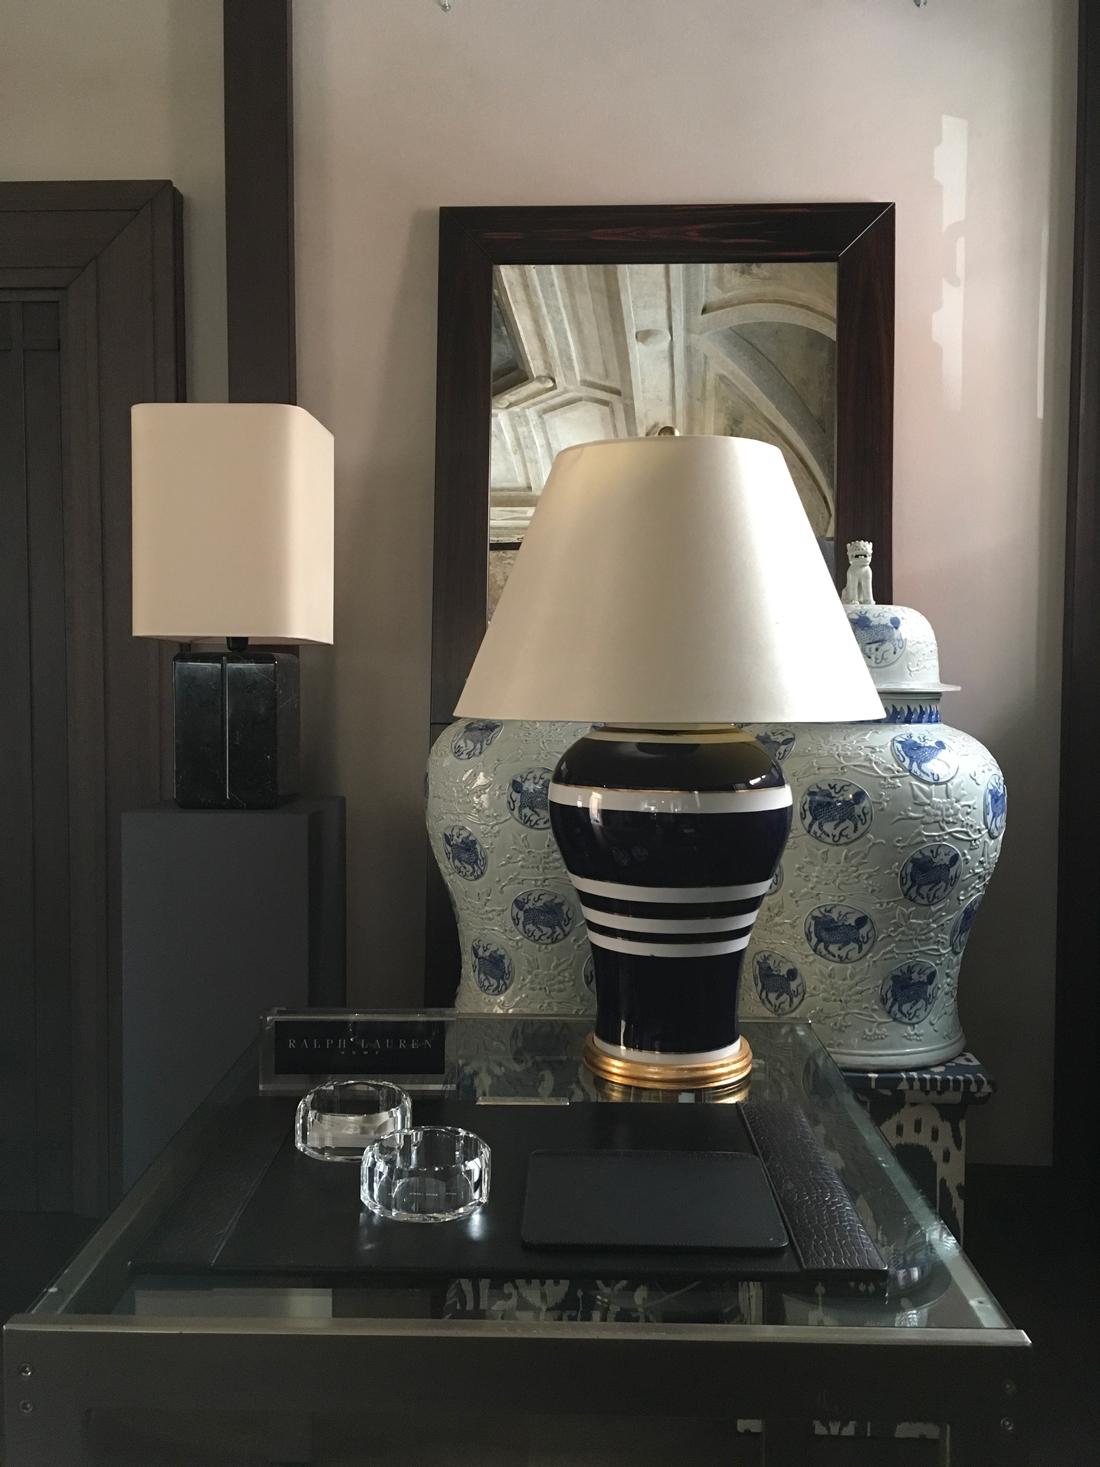 Dies ist eine klassische Silhouette mit gestreifter glasierter Porzellanlampe, die mit einem weißen Seidenschirm gekrönt wird, um den Look zu vervollständigen.
Handgemalte horizontale Streifen. Ralph Lauren Label.
Zeitlose Ralph Lauren